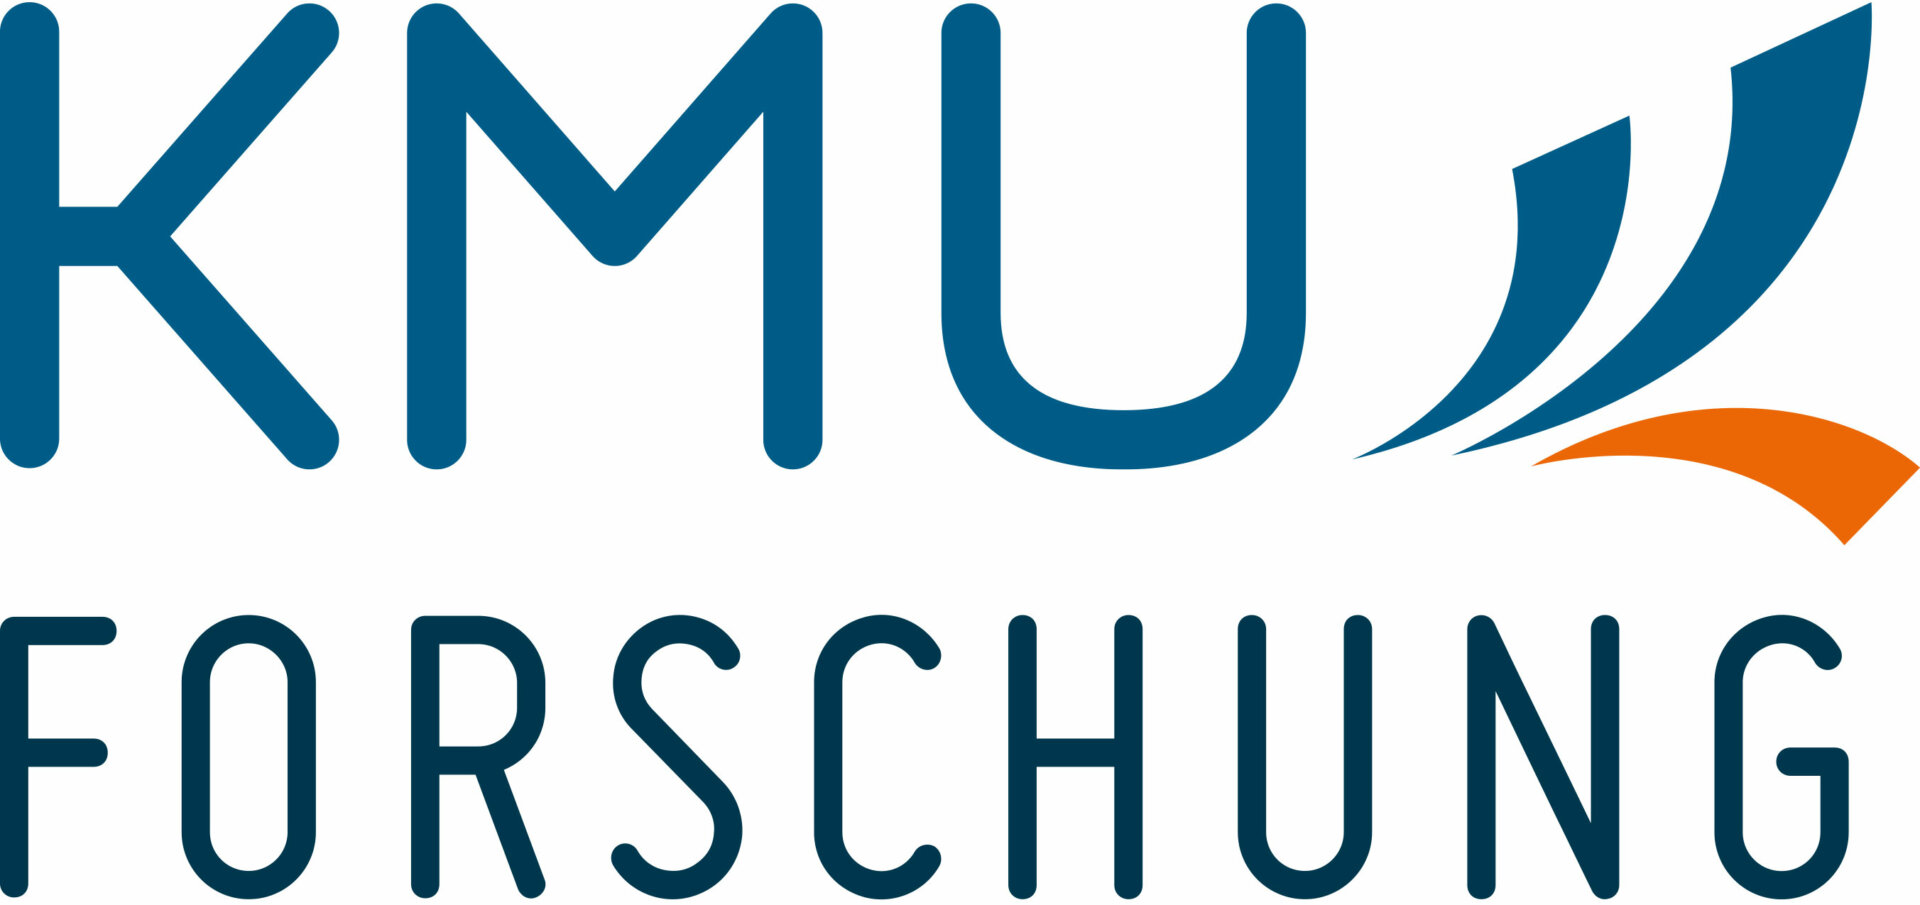 KMU Forschung Austria – Austrian Institute for SME Research